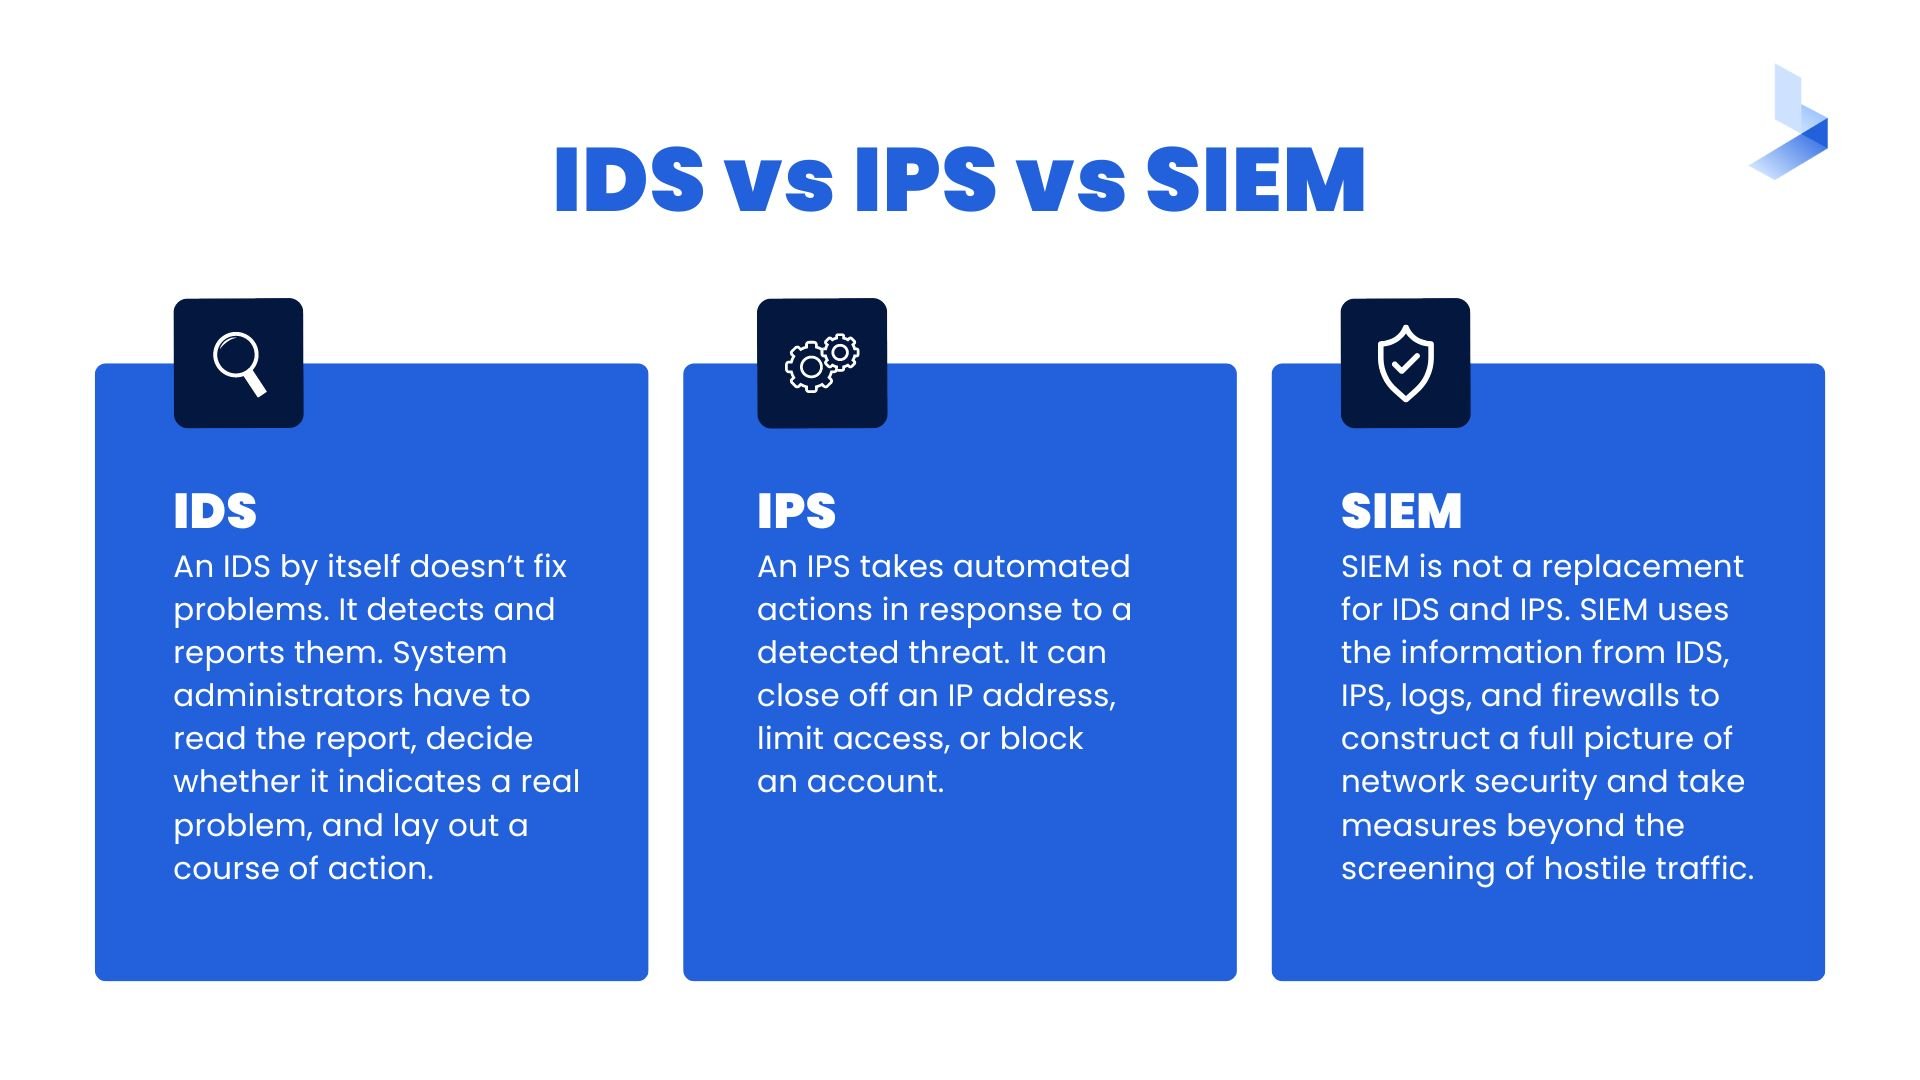 IDS vs IPS vs SIEM